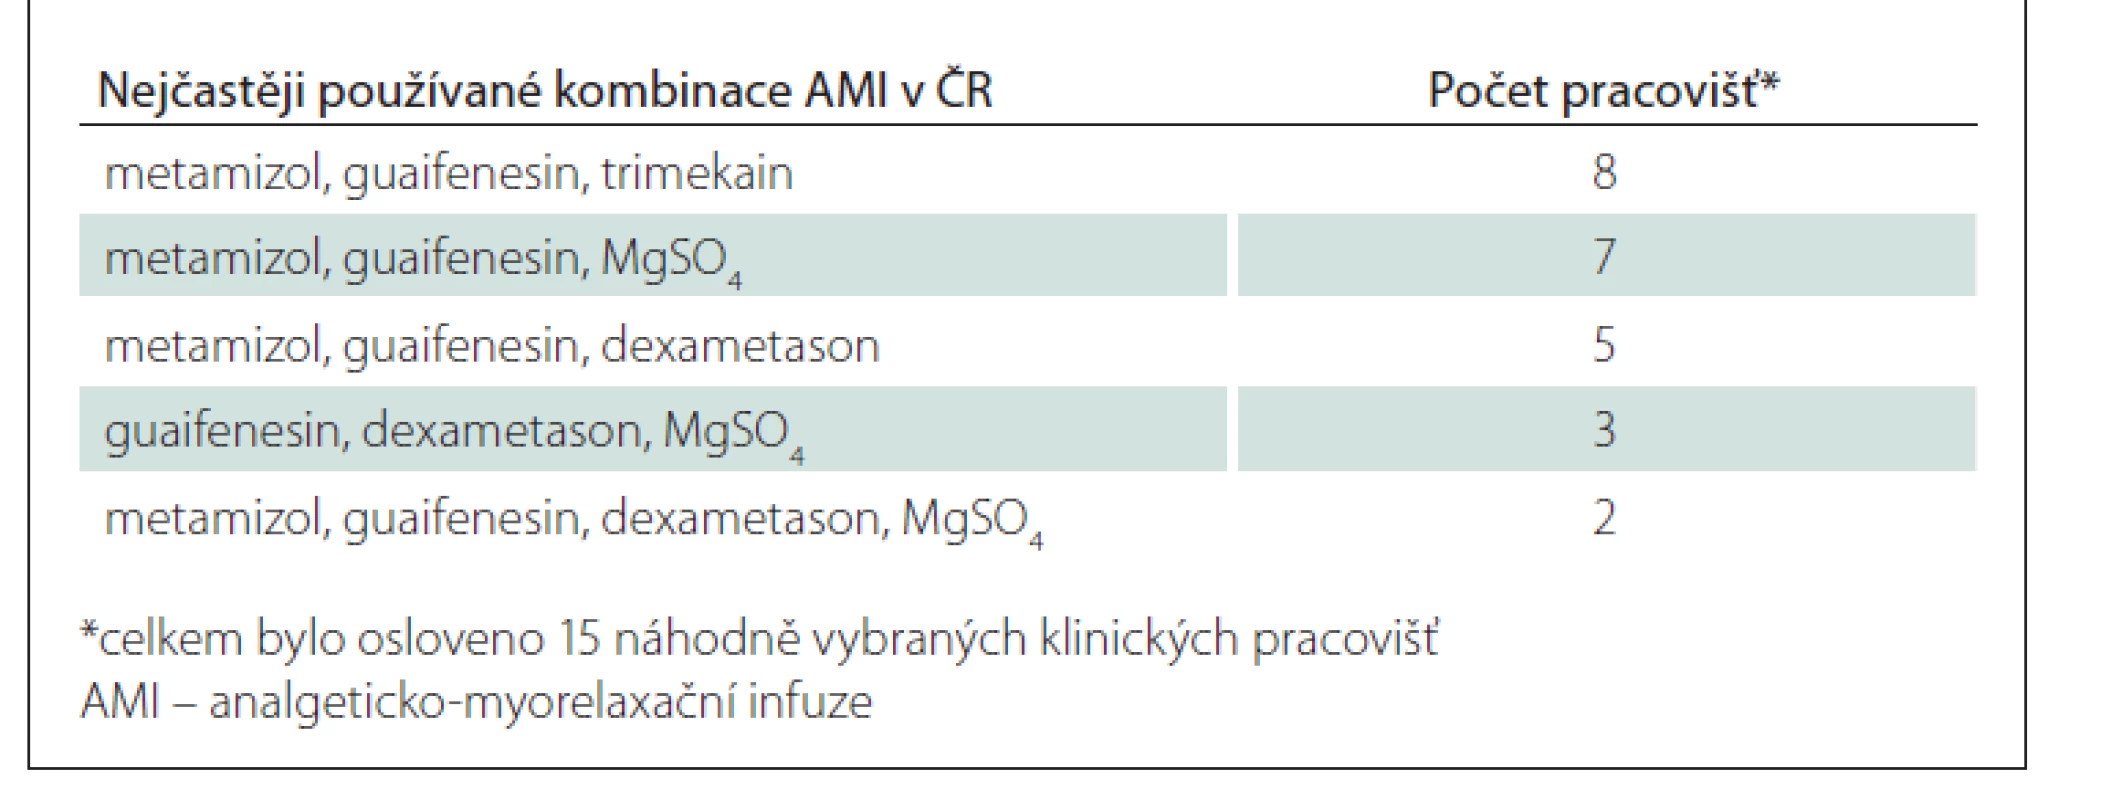 Výběr nejčastěji používaných kombinací AMI v ČR.